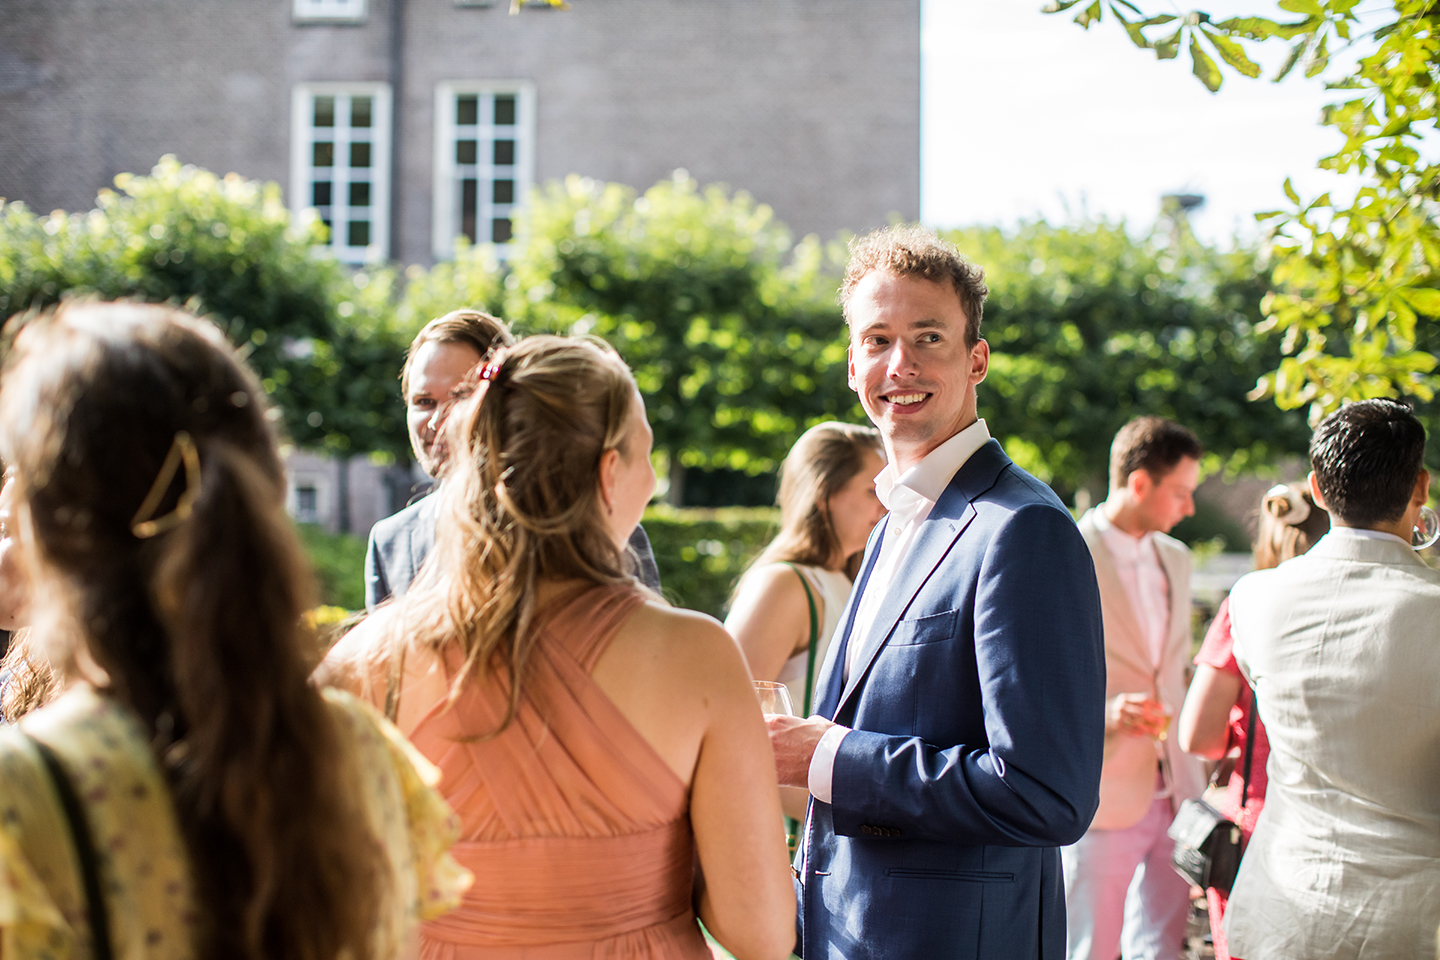 Daggasten tijdens een bruiloft bij Chateauhotel de Havixhorst in Meppel